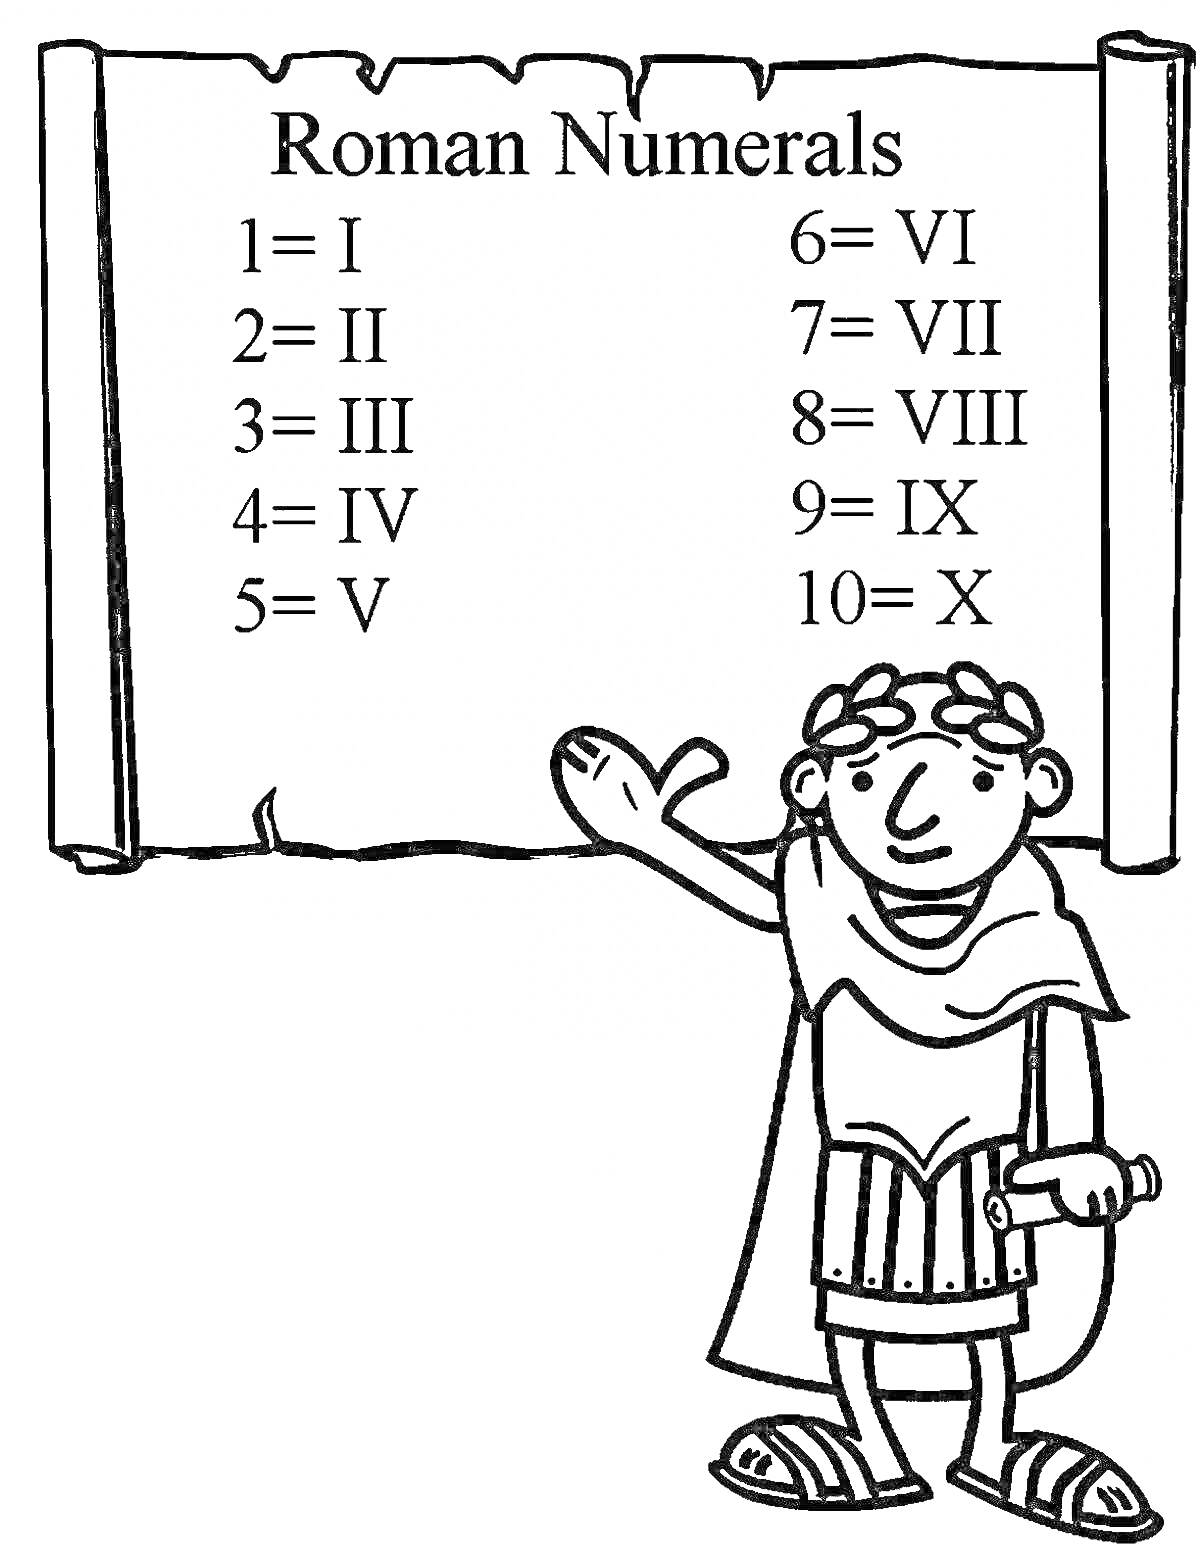 Раскраска Римские цифры со свитком и персонажем в античных одеждах